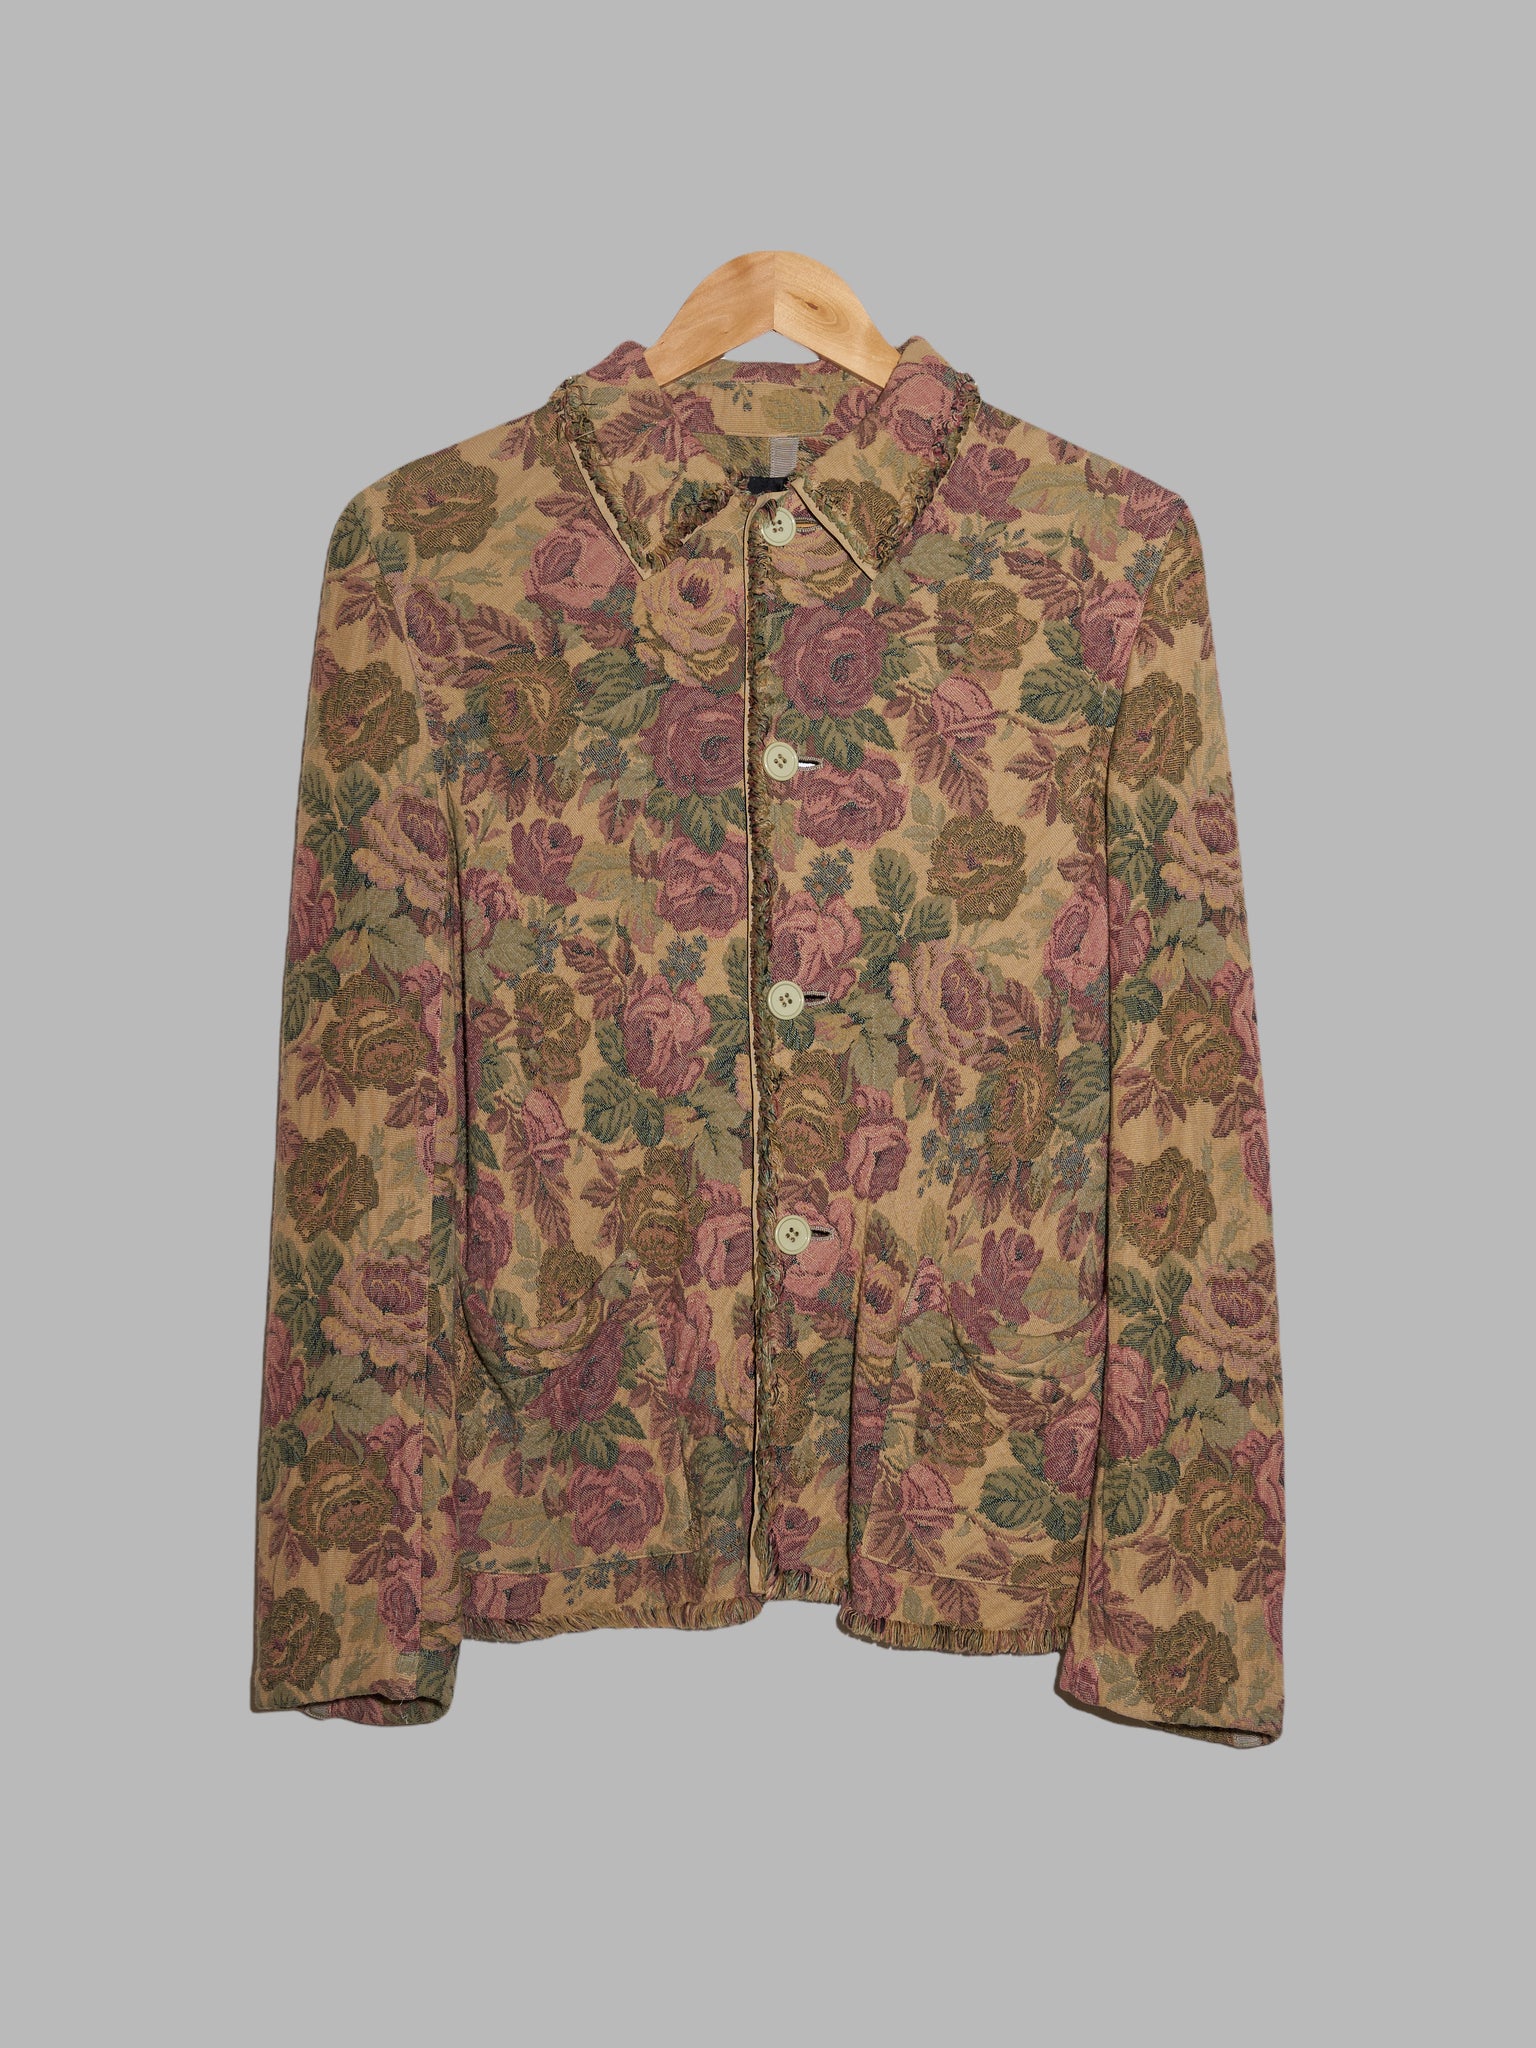 Tricot Comme des Garcons 2000 brown floral jacquard reversible 4 button jacket